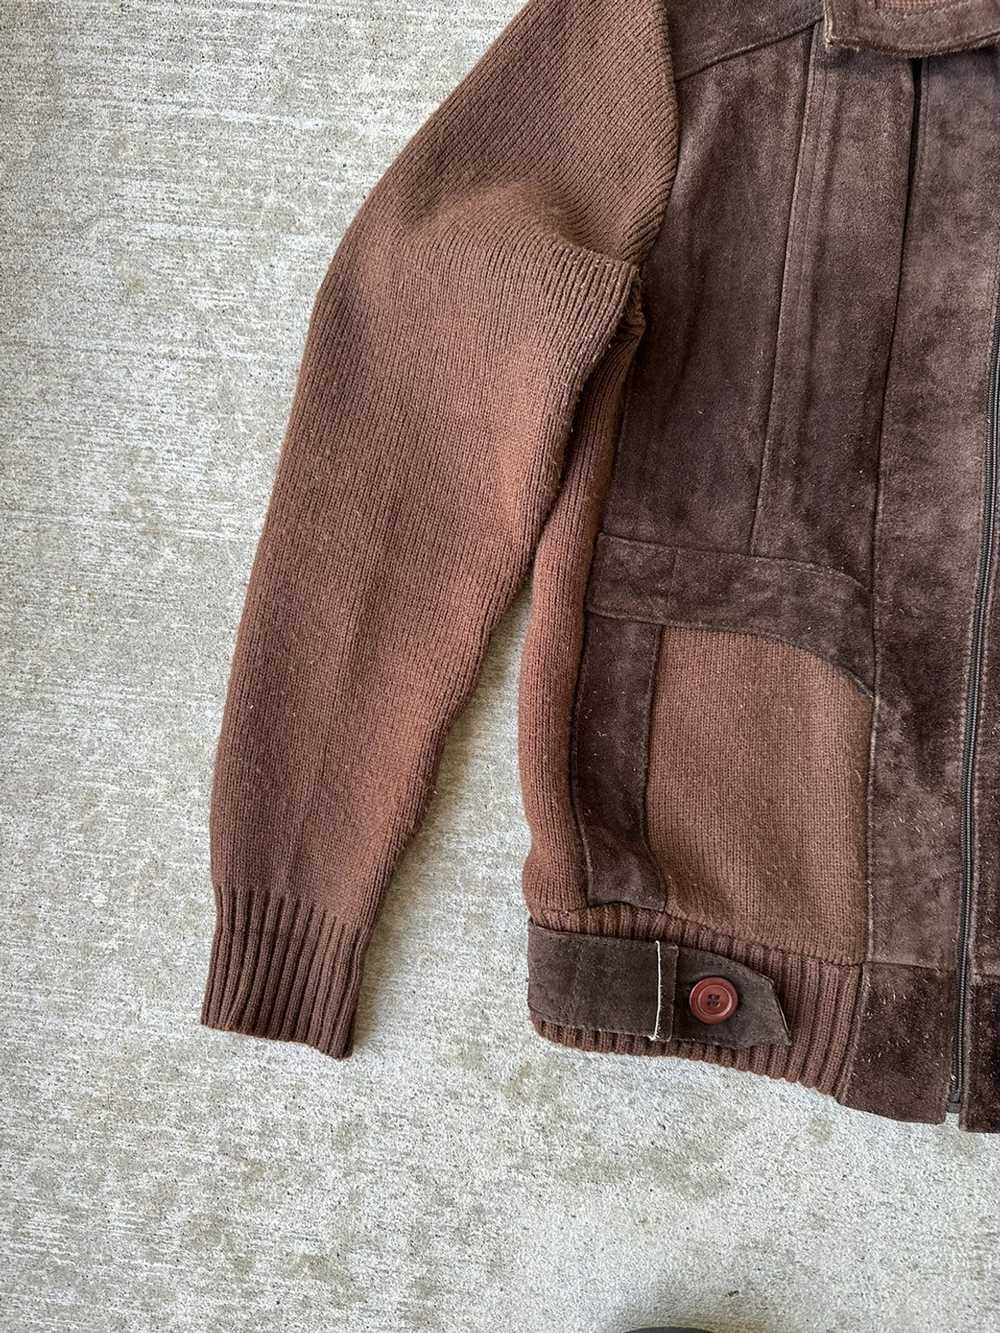 Genuine Leather × Retro Jacket × Vintage Vintage … - image 3